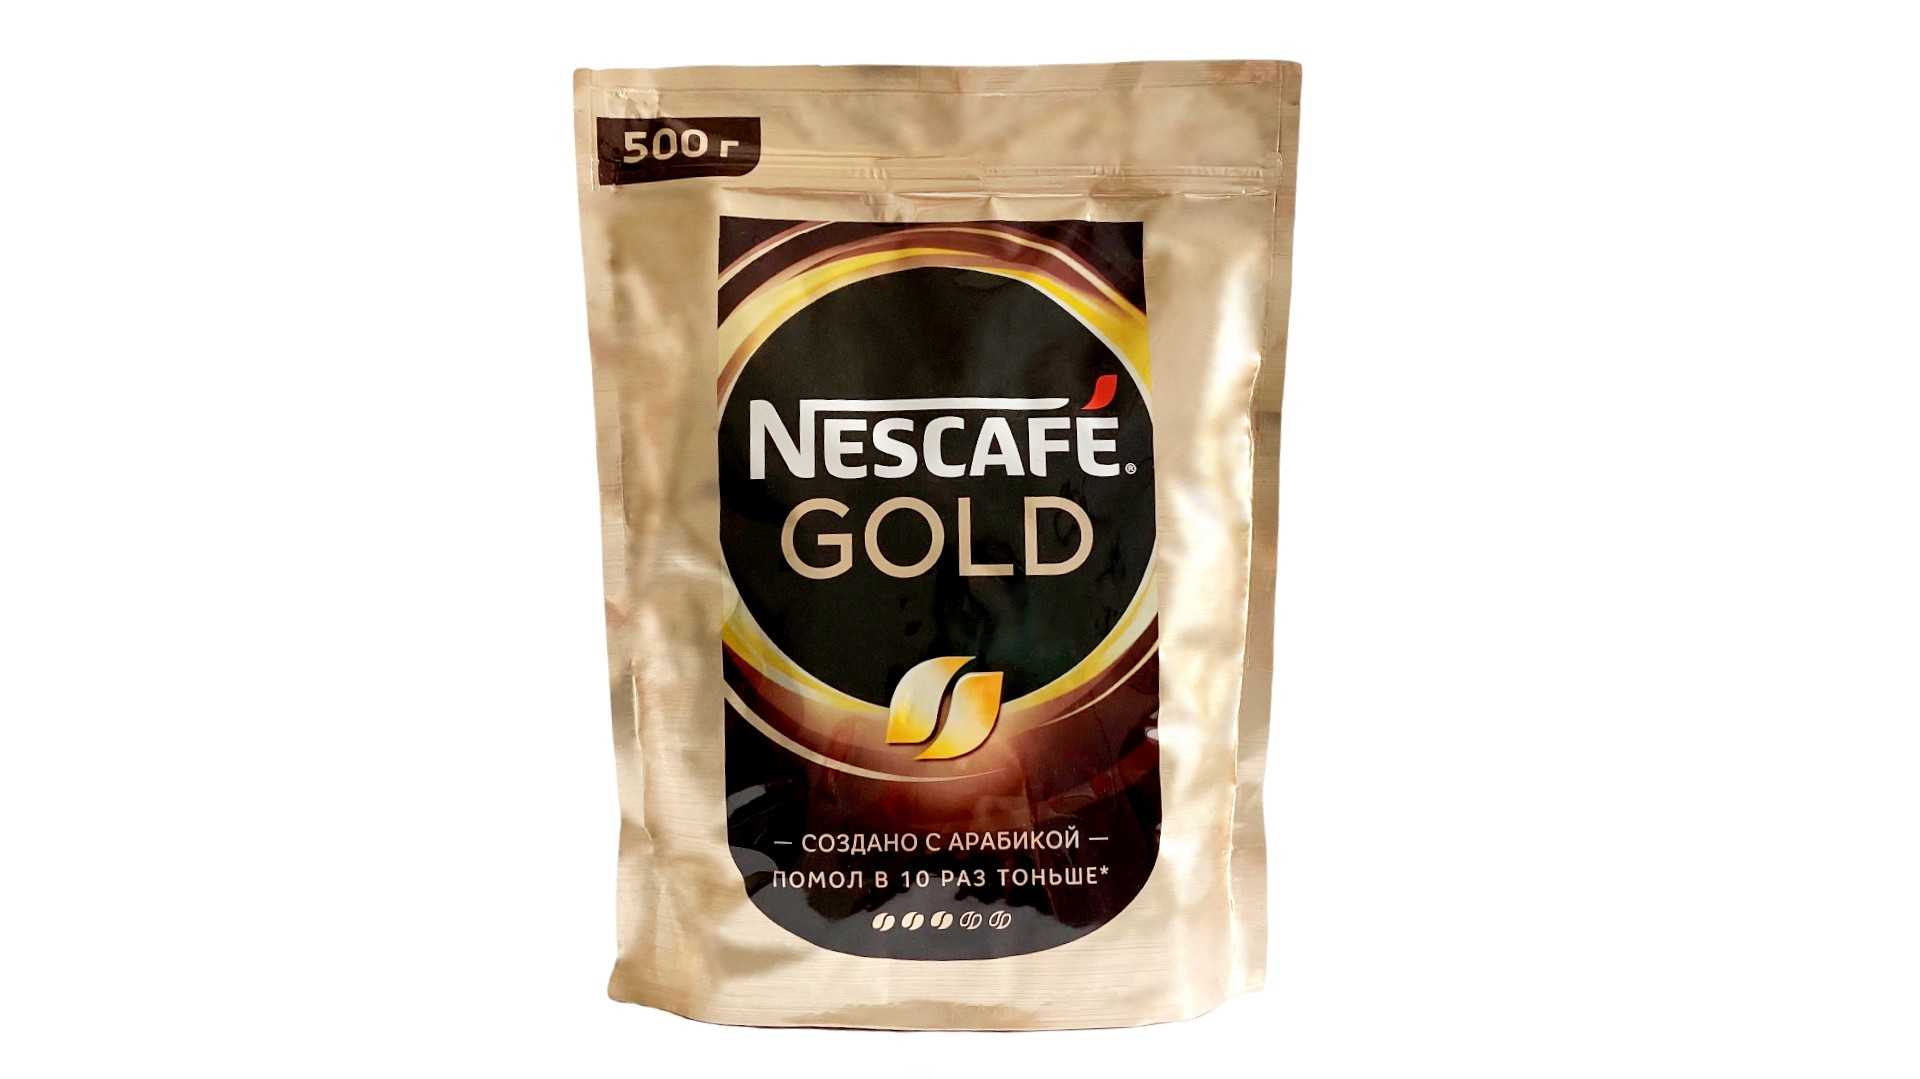 Nescafe gold растворимый 900. Кофе растворимый Нескафе Голд 500г сублимированный. Кофе Нескафе Голд 500г. Кофе Nescafe Gold пакет 500 гр. Кофе растворимый Нескафе Голд 500.